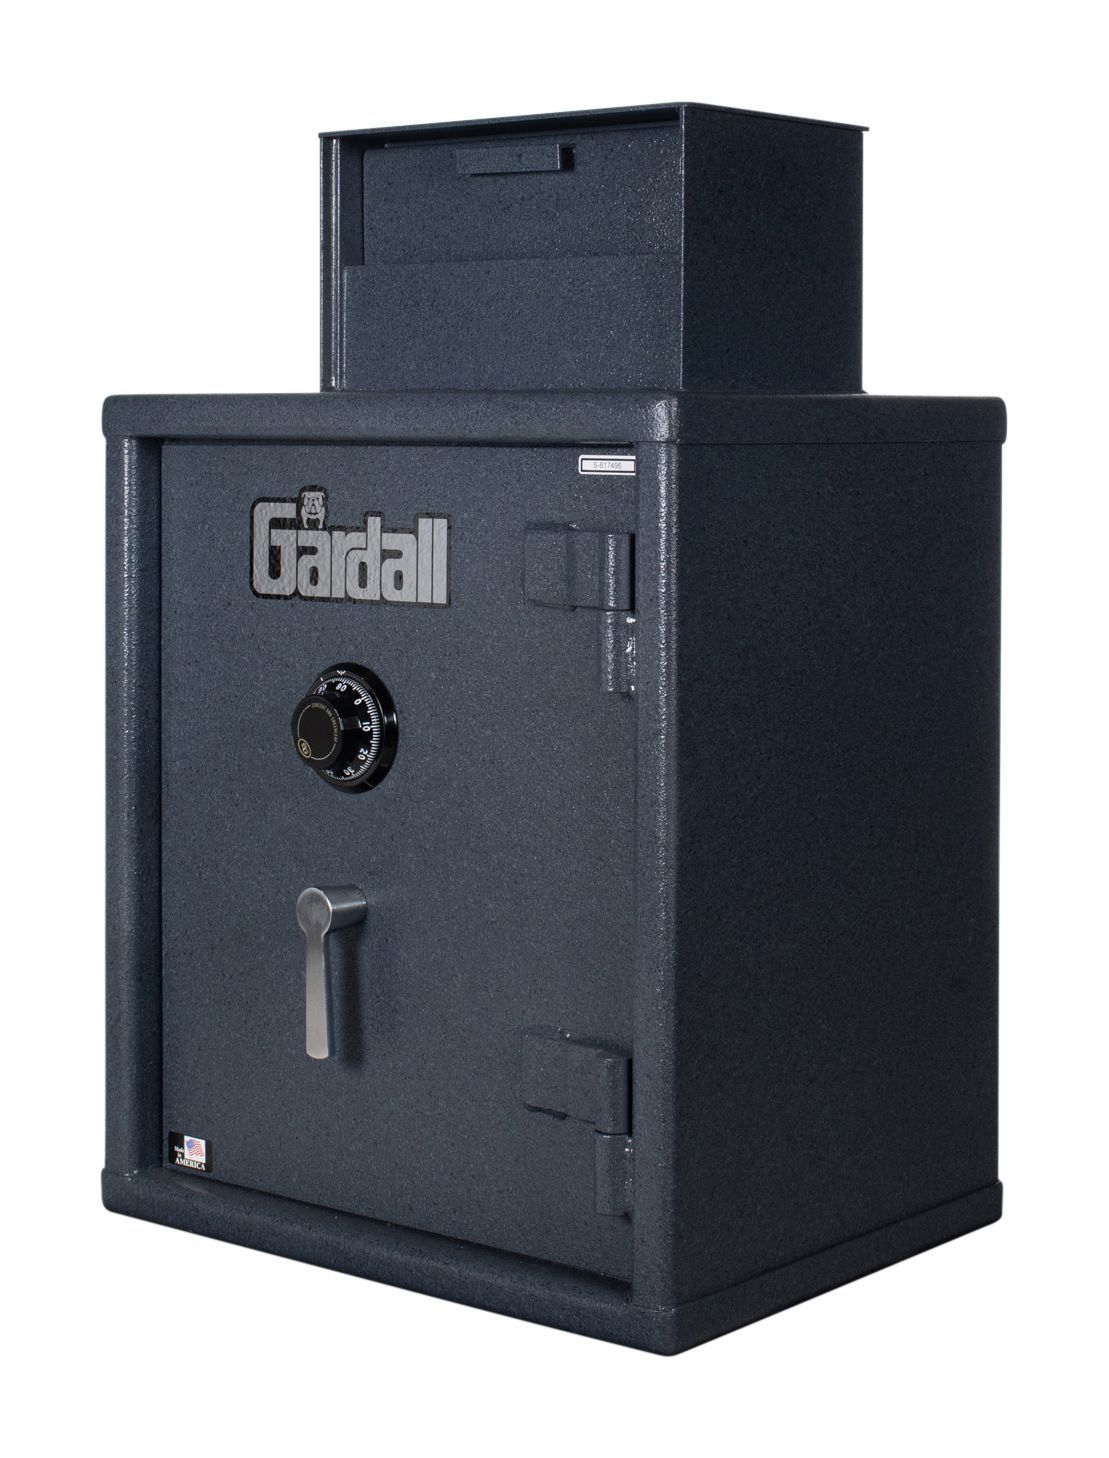 Gardall FL2522/2 Cash Register Tray Deposit Safe